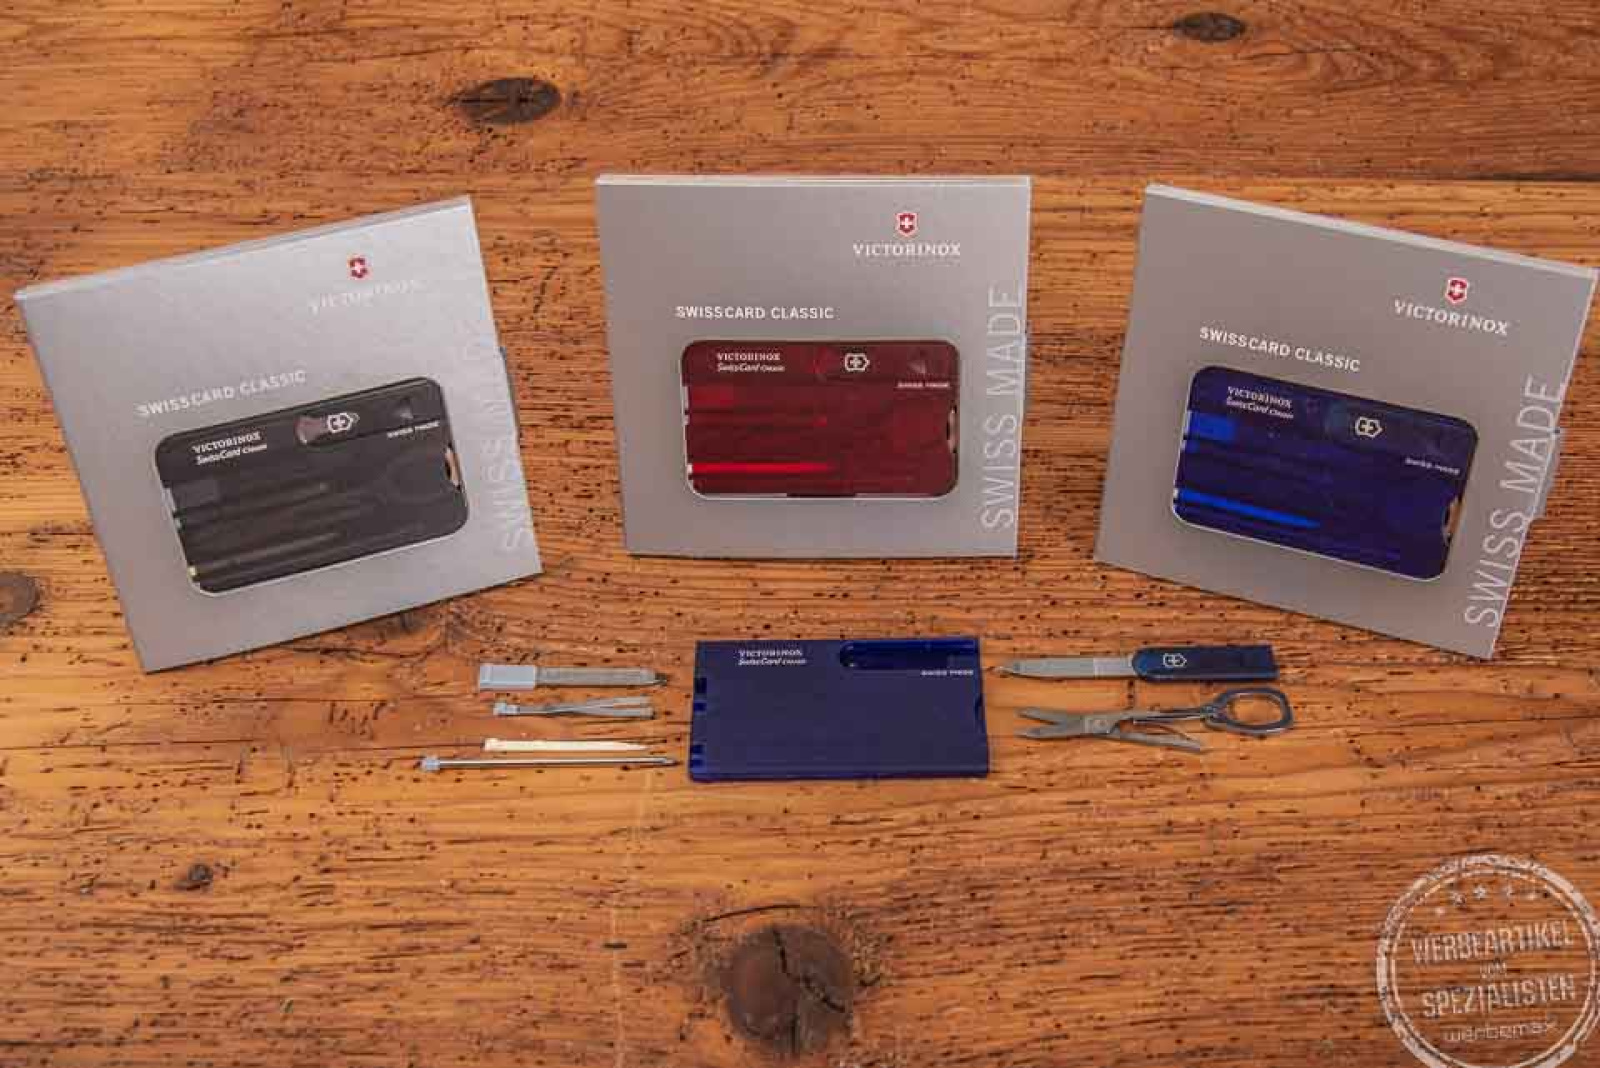 Mehrzweck-Werkzeug im Kreditkartenformat von Victorinox in rot, blau und grau